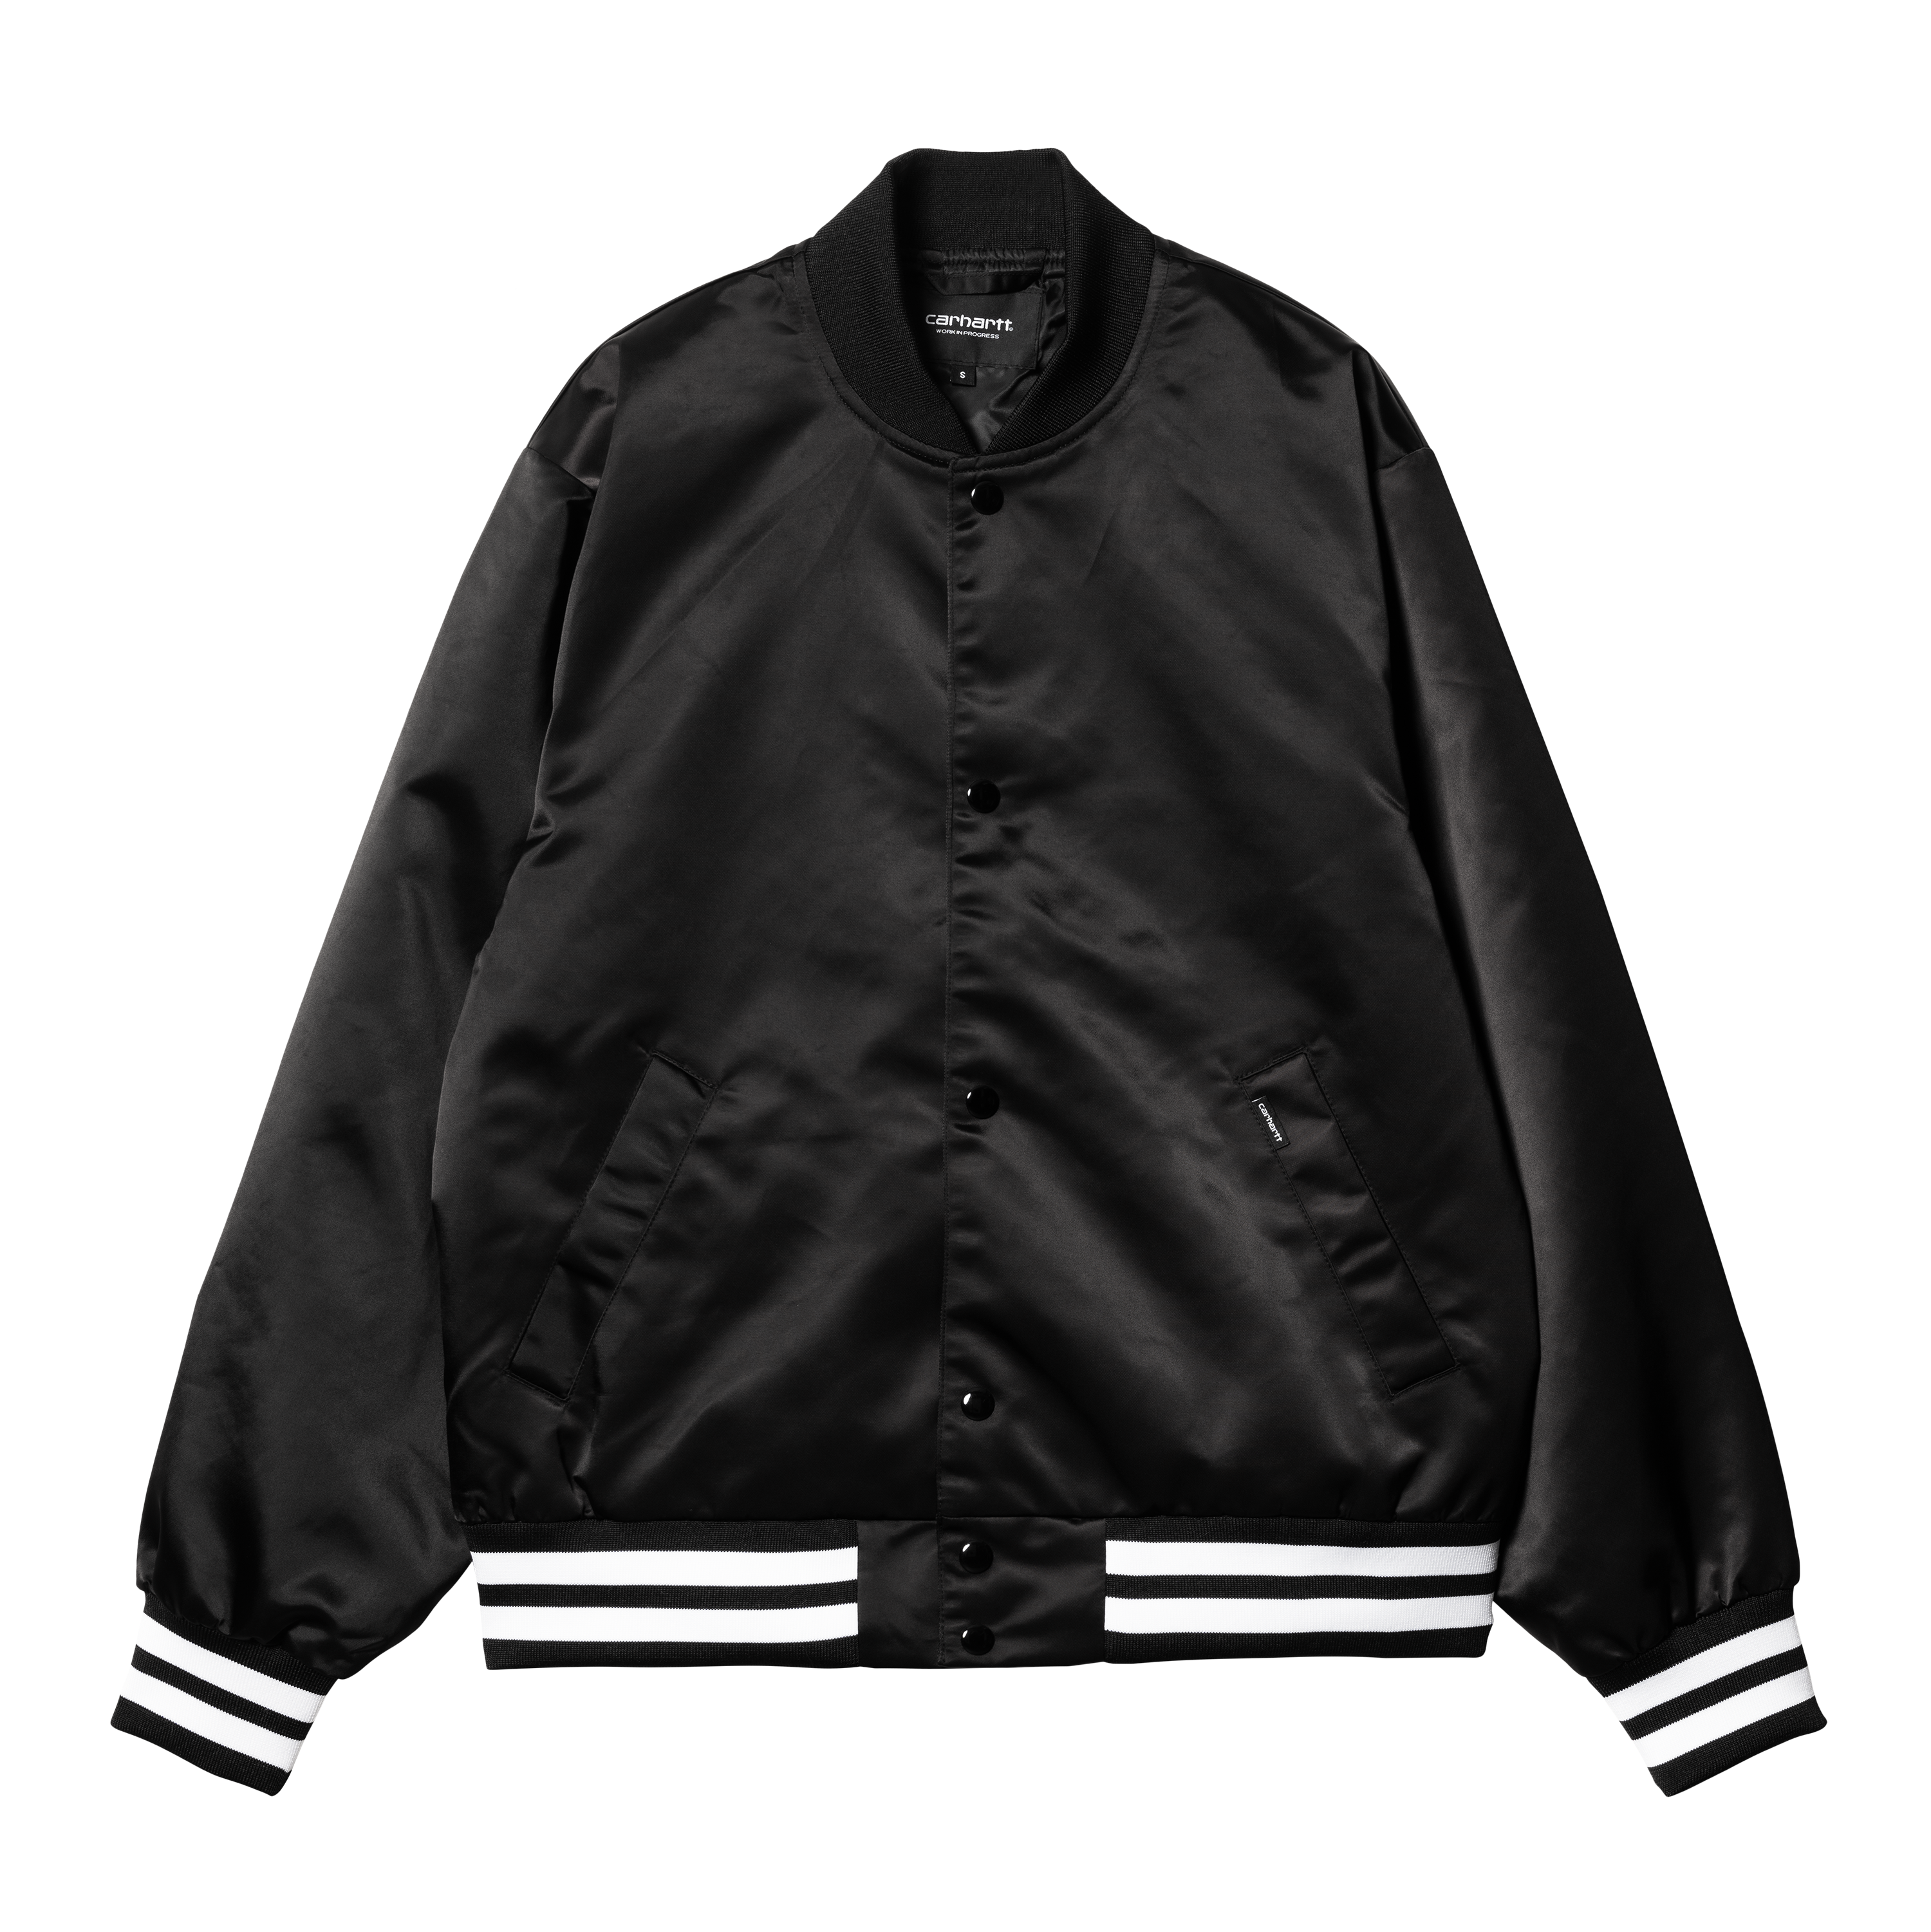 Nash Oversized Leather Bomber Jacket